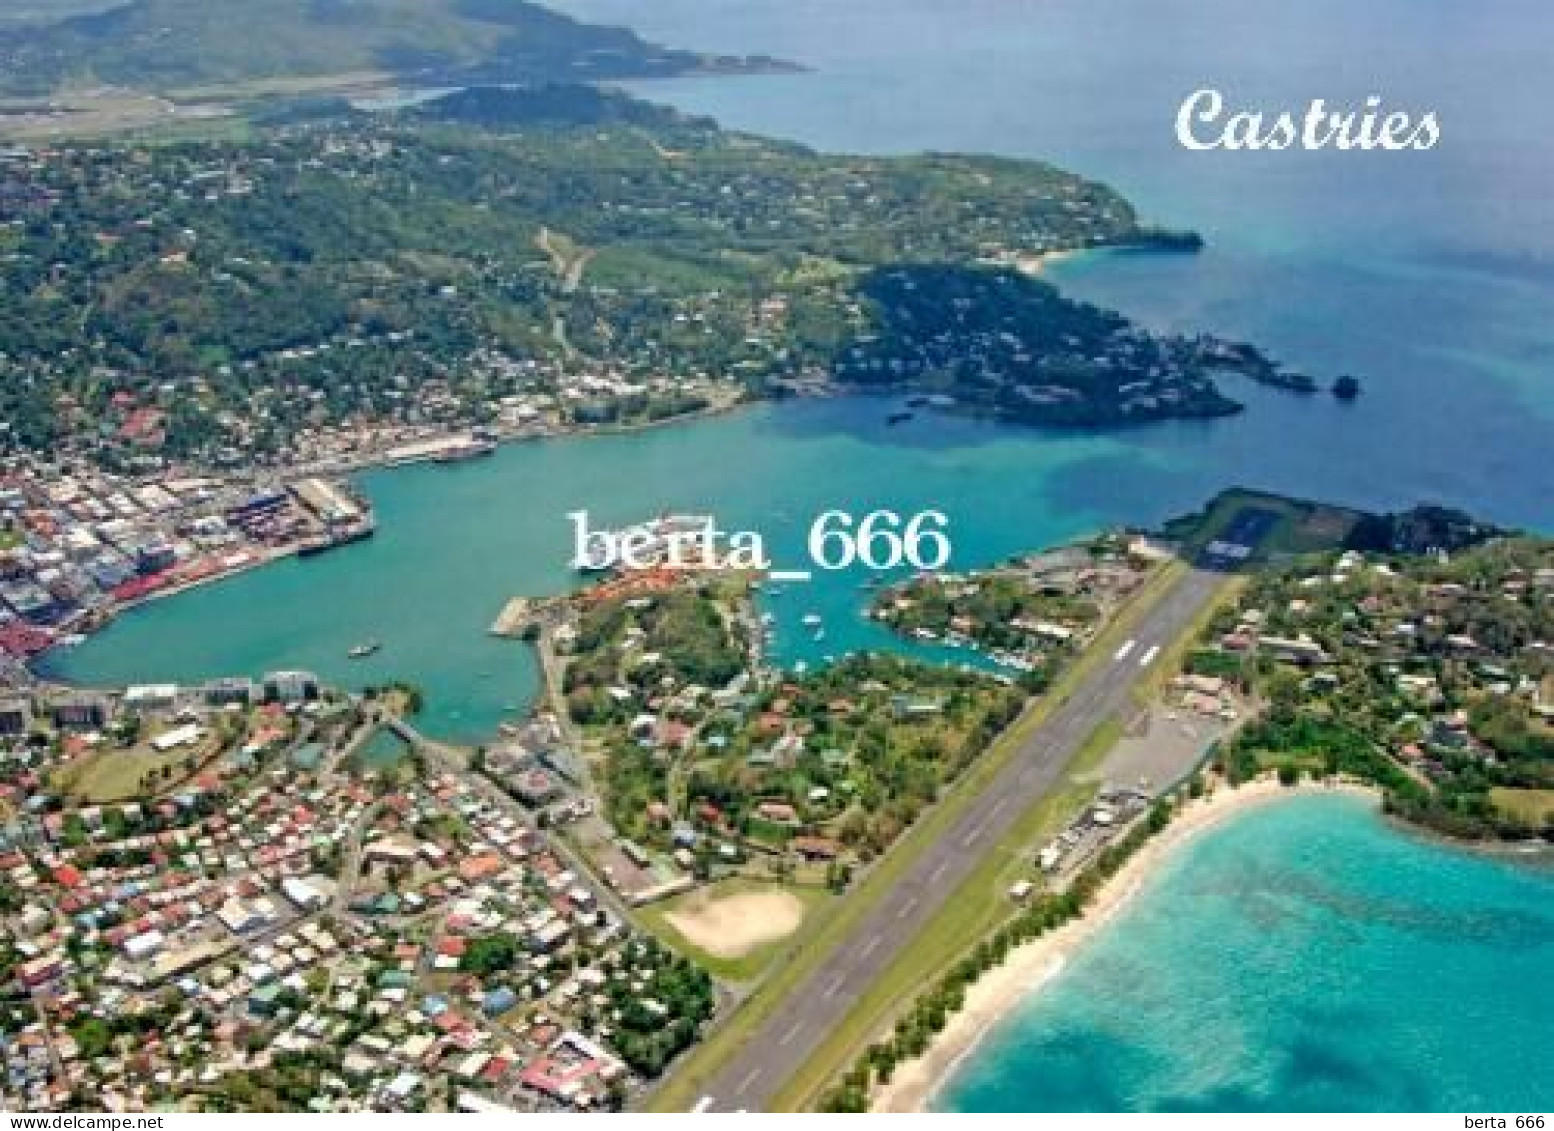 Saint Lucia Island Castries Aerial View Runway New Postcard - Santa Lucia